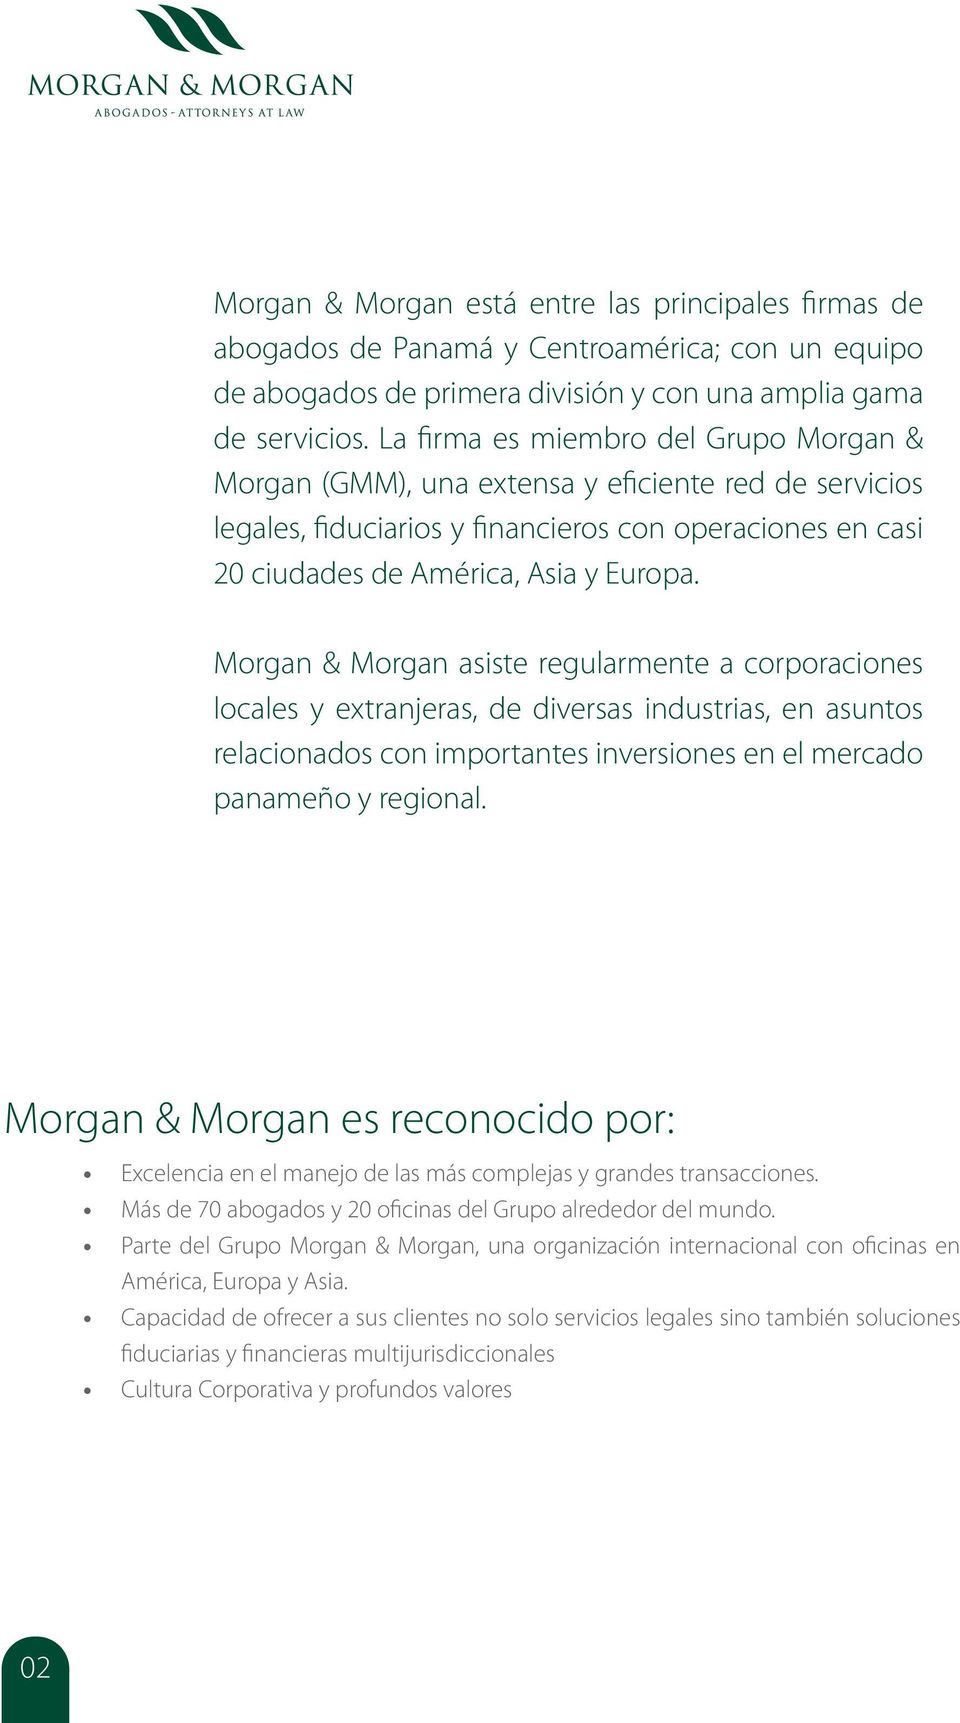 Morgan & Morgan asiste regularmente a corporaciones locales y extranjeras, de diversas industrias, en asuntos relacionados con importantes inversiones en el mercado panameño y regional.